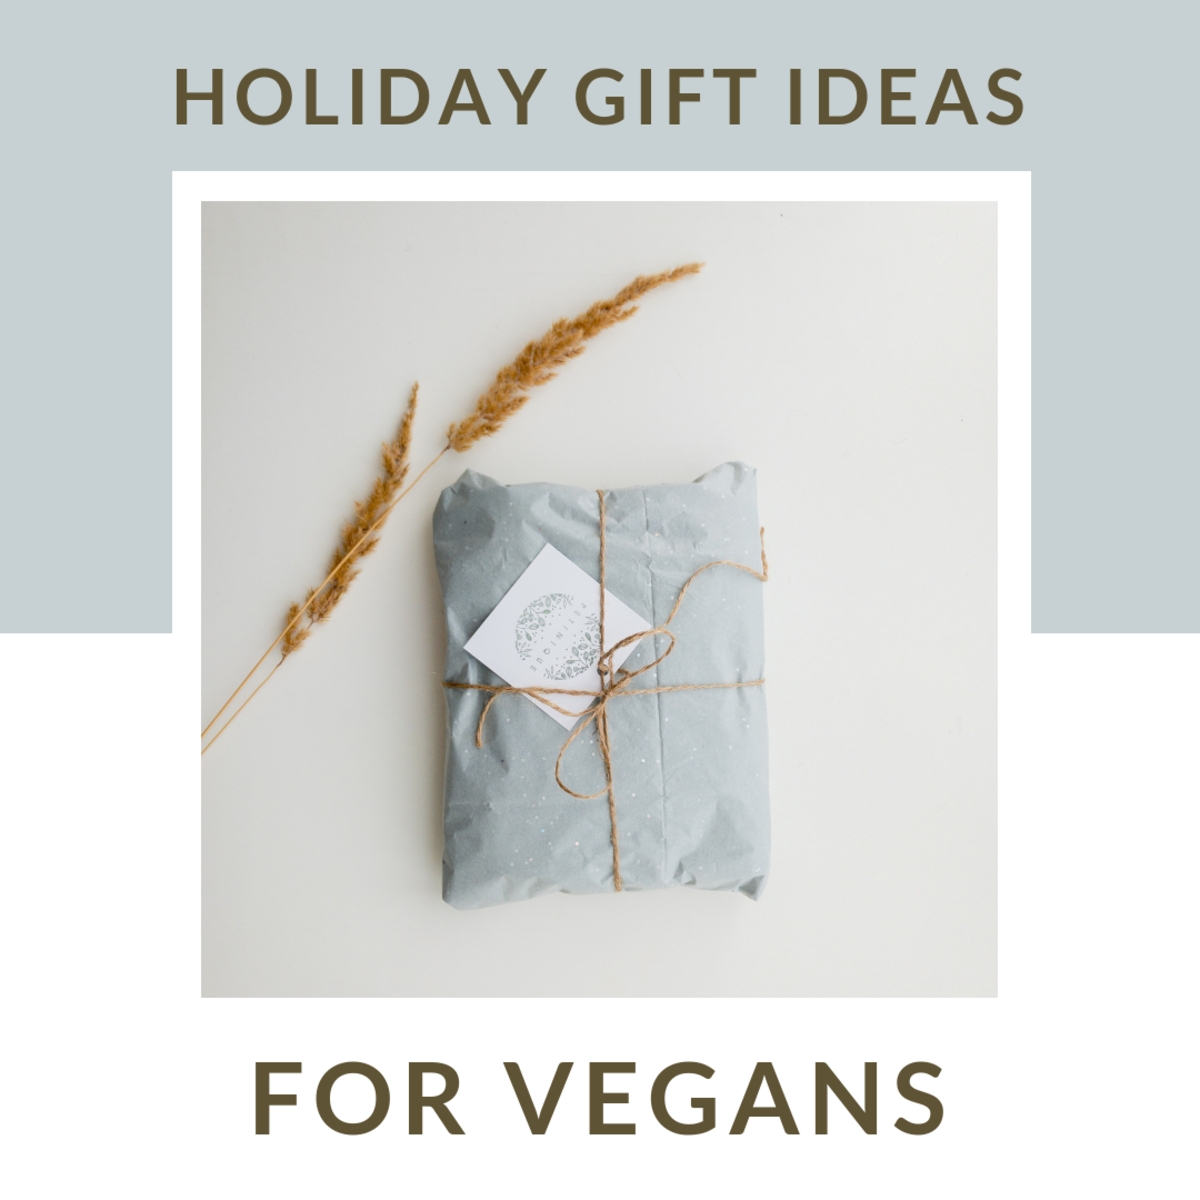 Great gift ideas for vegans.